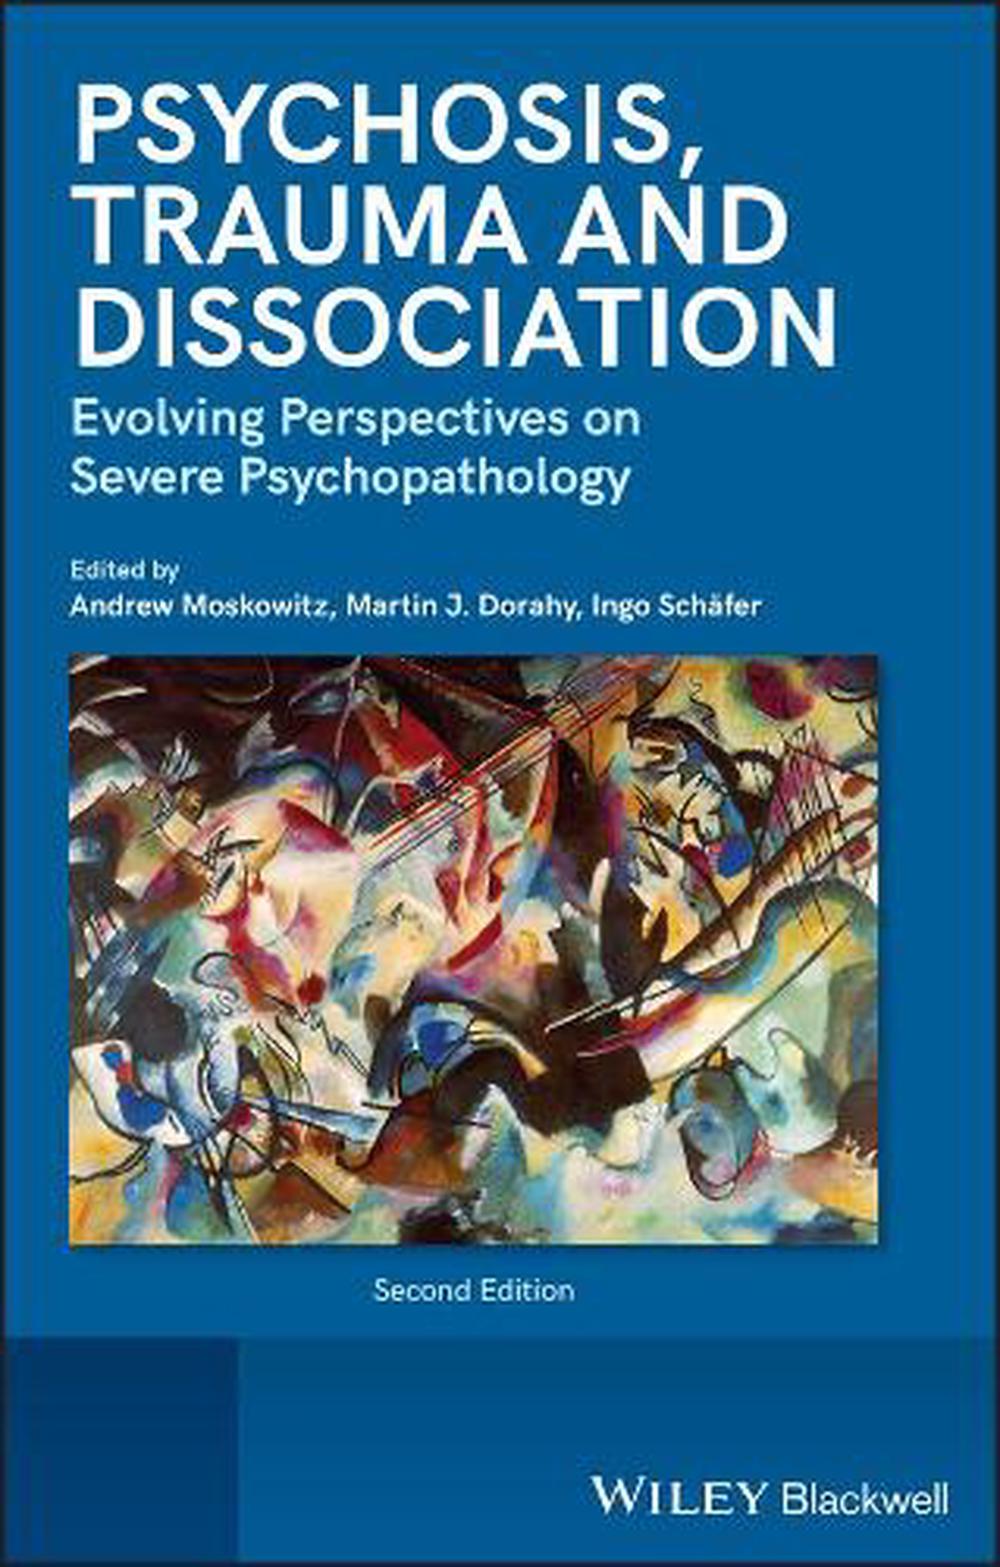 is dissociation a psychotic symptom